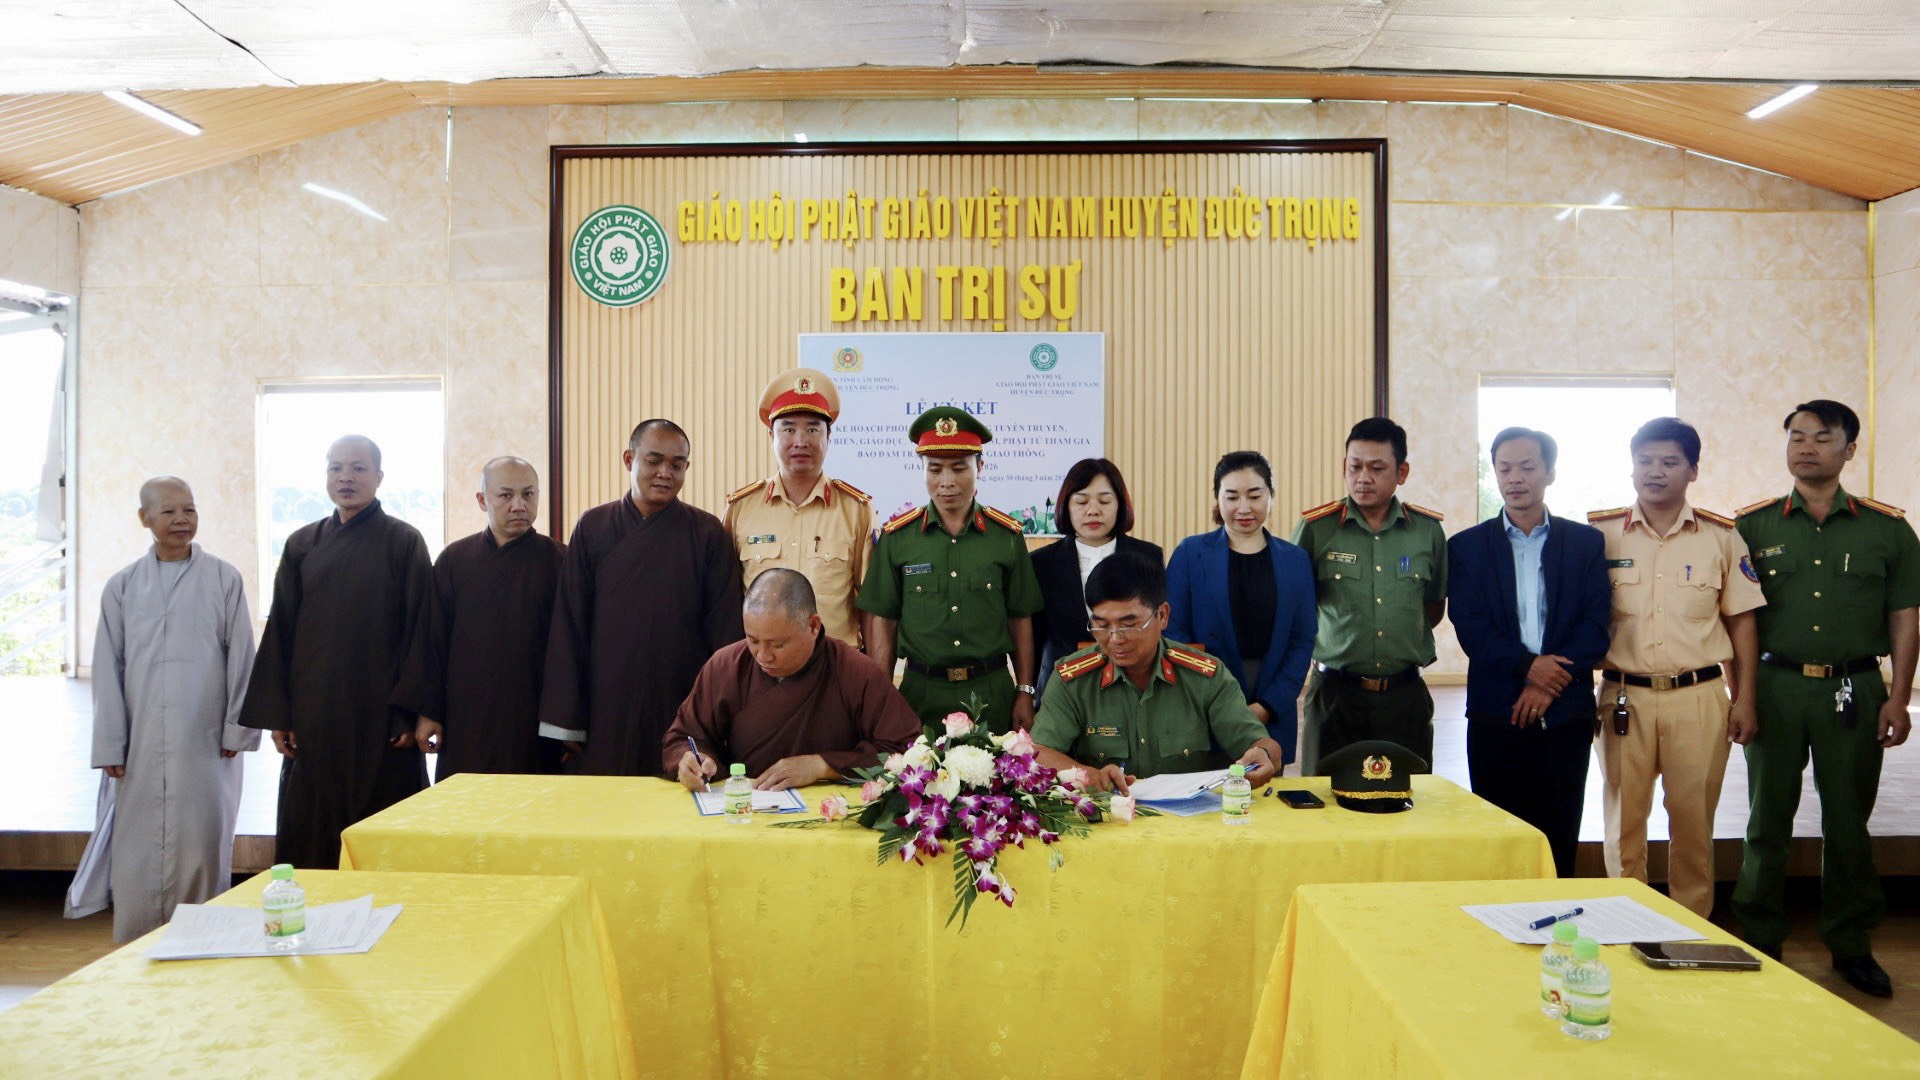 Giáo hội Phật giáo Việt Nam huyện Đức Trọng tổ chức ký kết thực hiện chương trình